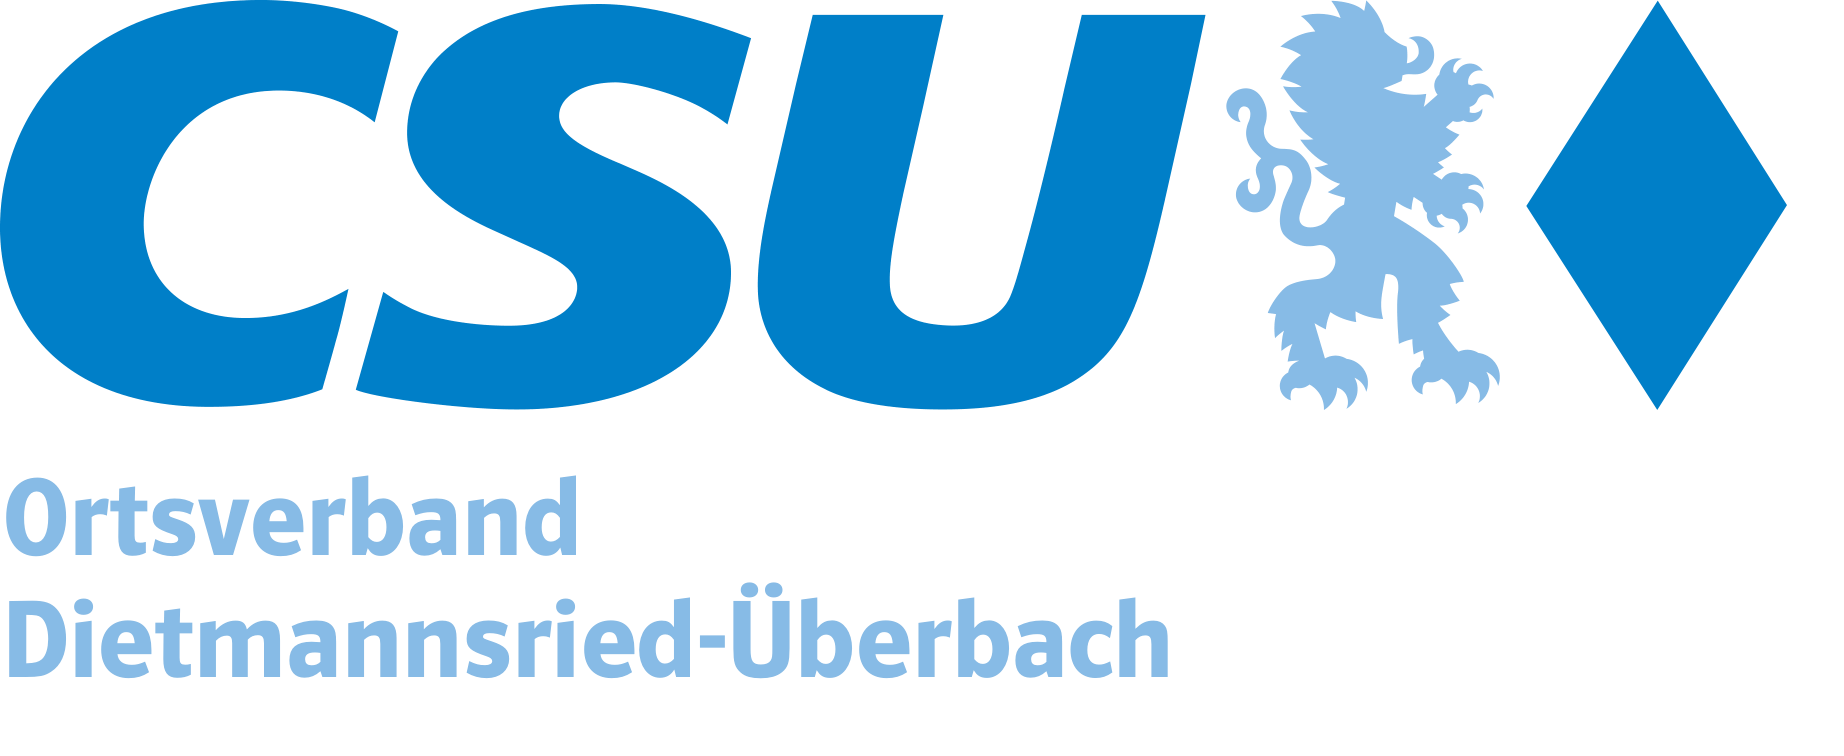 CSU Dietmannsried-Überbach